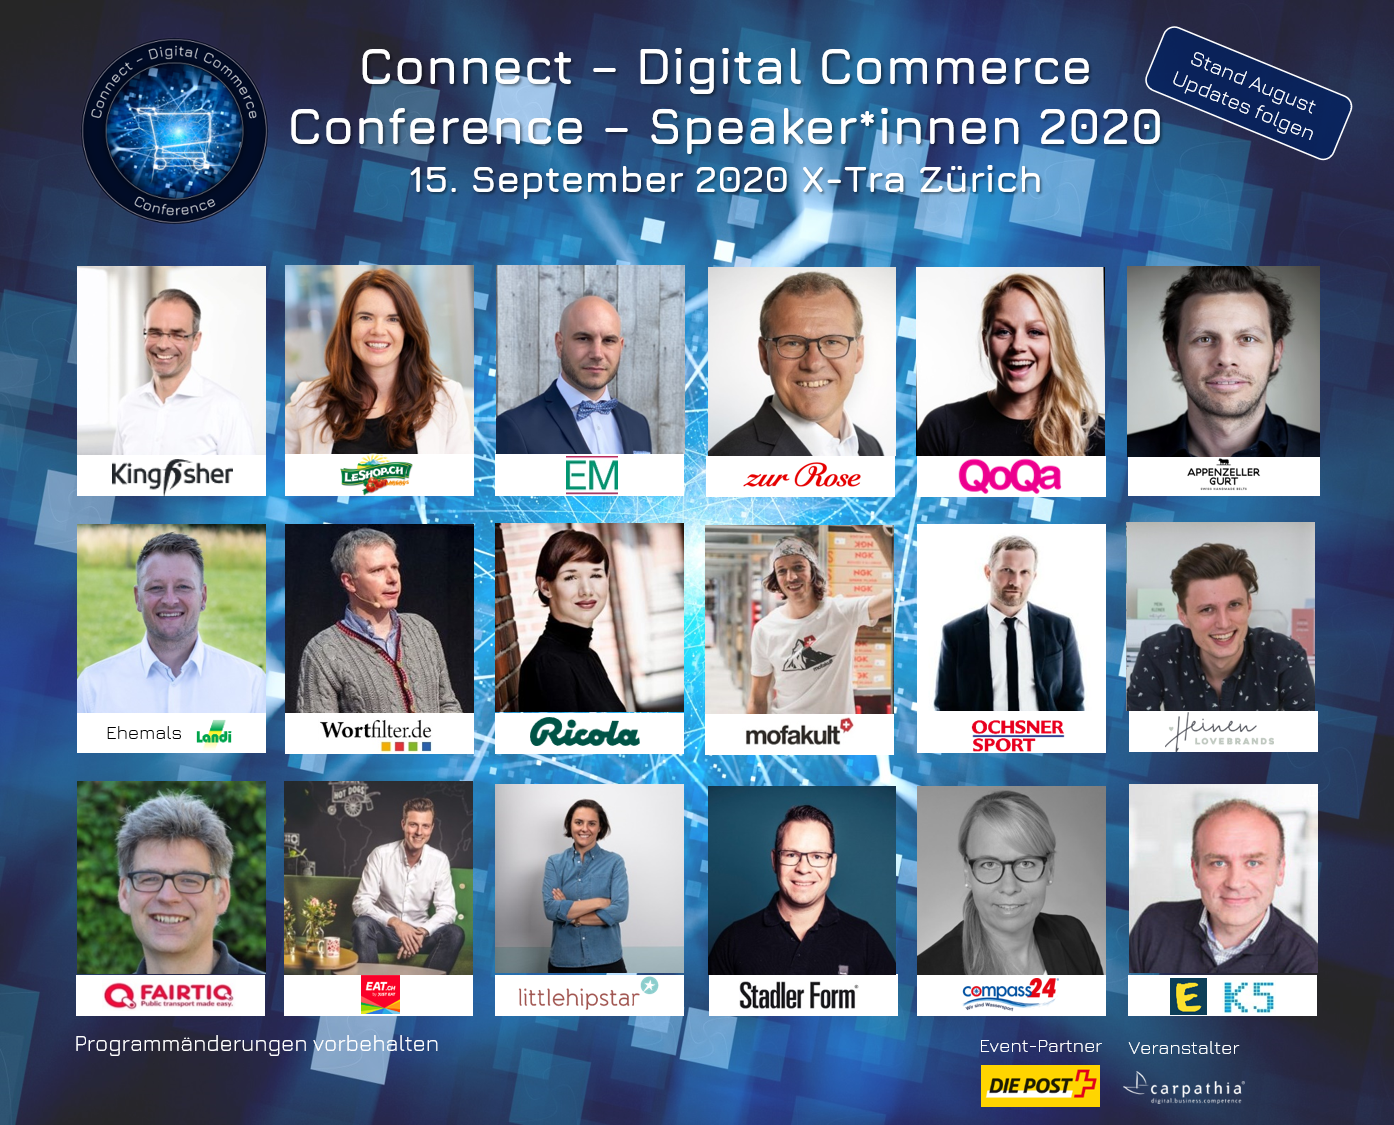 Hochkarätige Speaker*innen der Connect - Digital Commerce Conference 2020 vom 15. September 2020 im X-Tra in Zürich